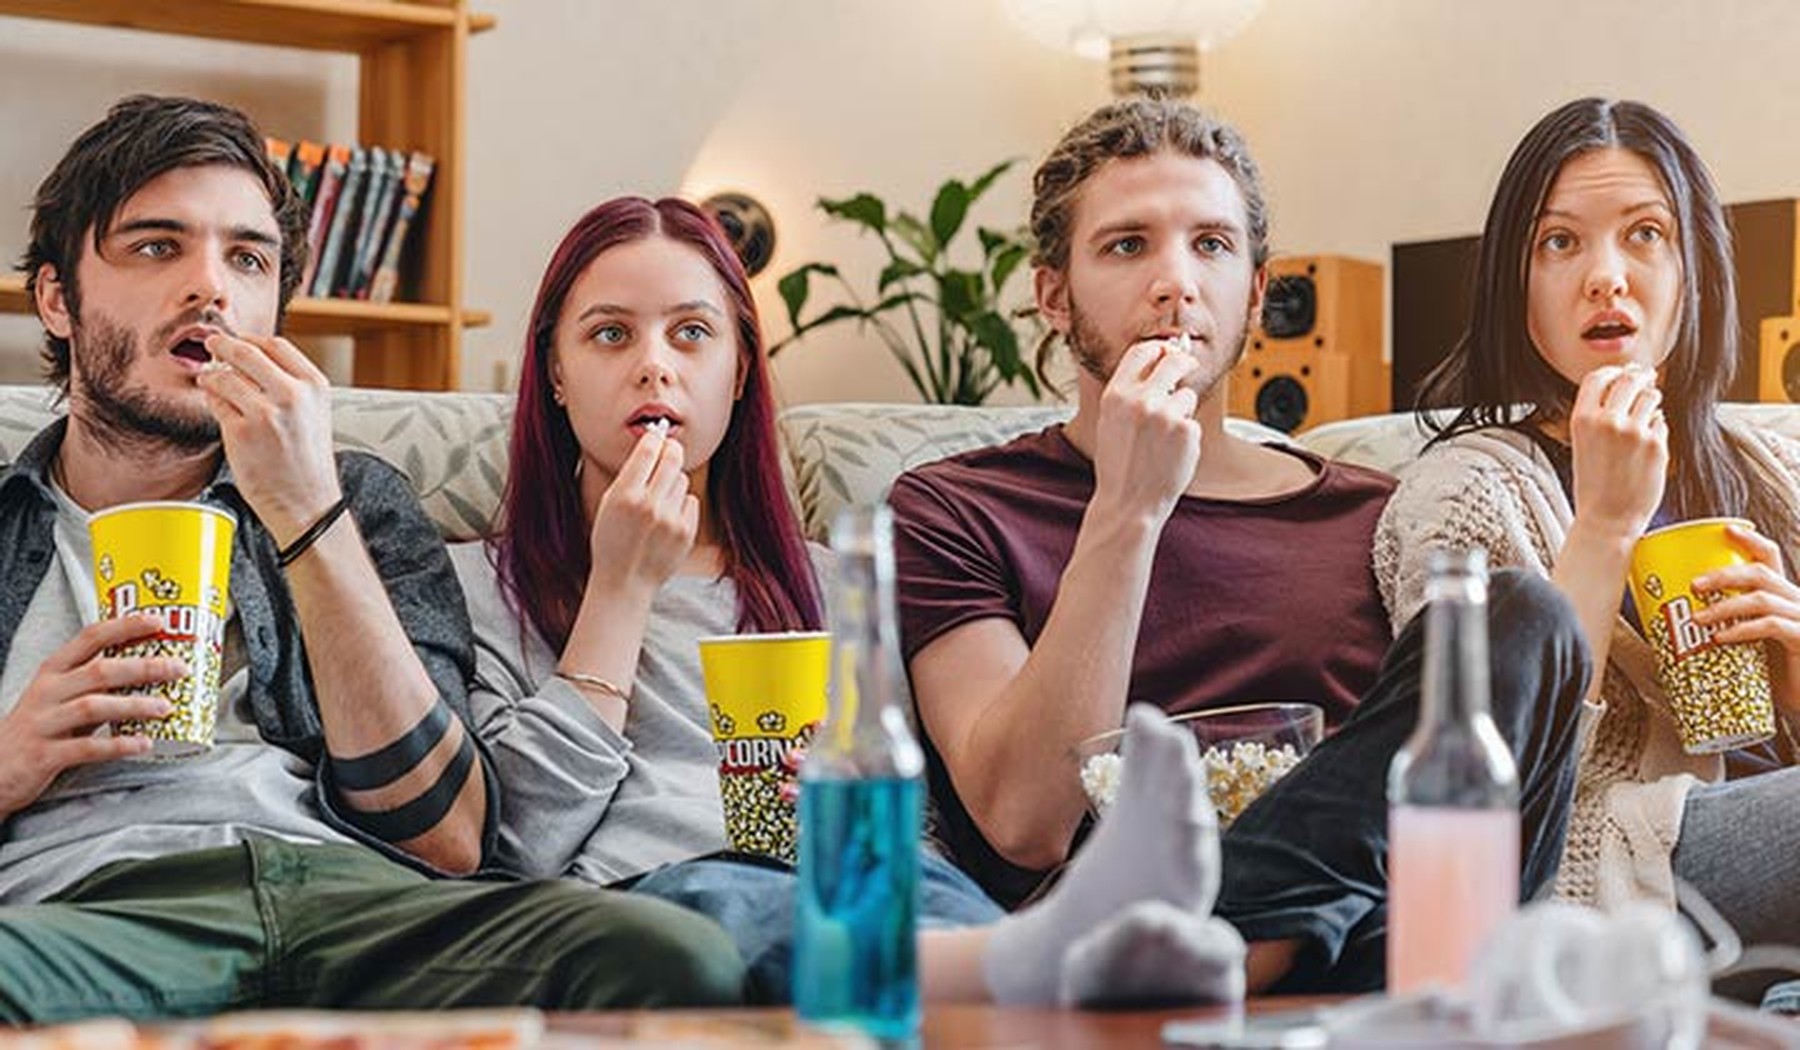 Grupo de 4 amigos sentados en un sofá y asombrados viendo una película mientras comen palomitas